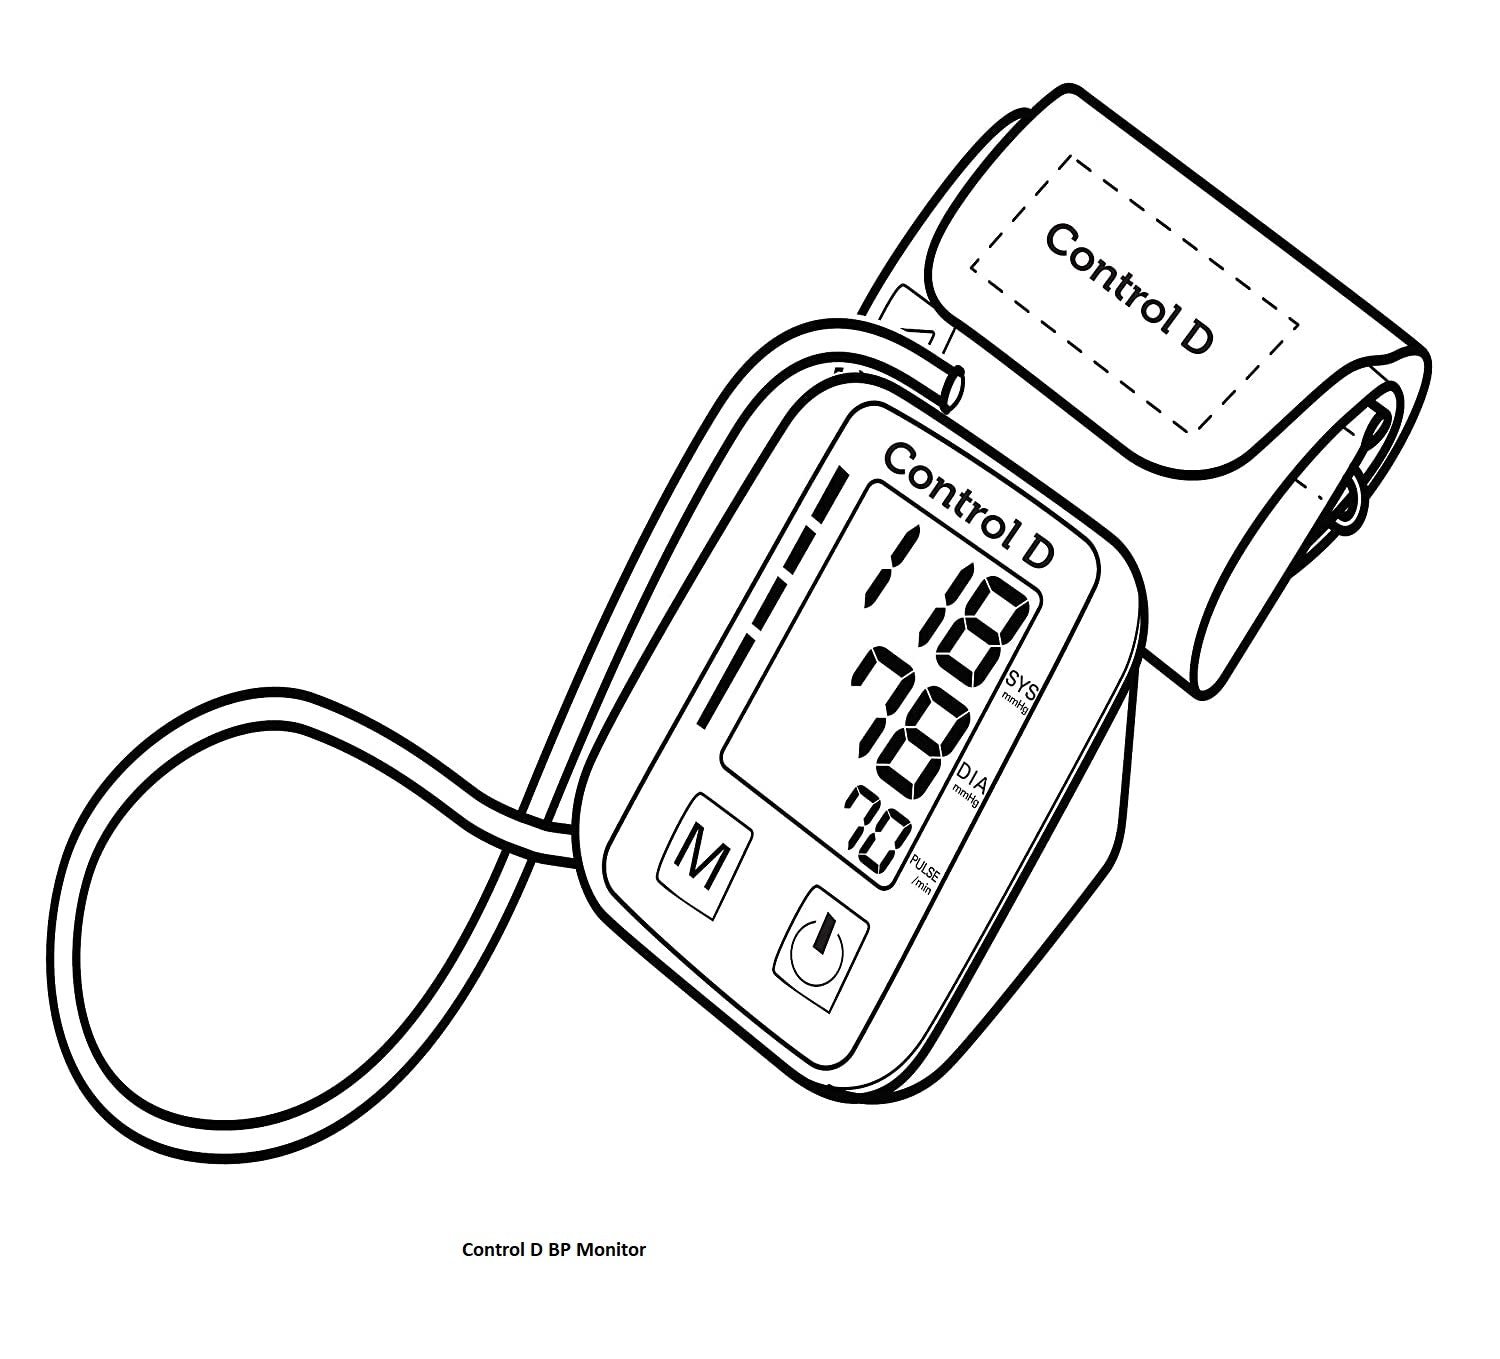 Galaxy Watch 4: Scientific Blood Pressure Test - YouTube